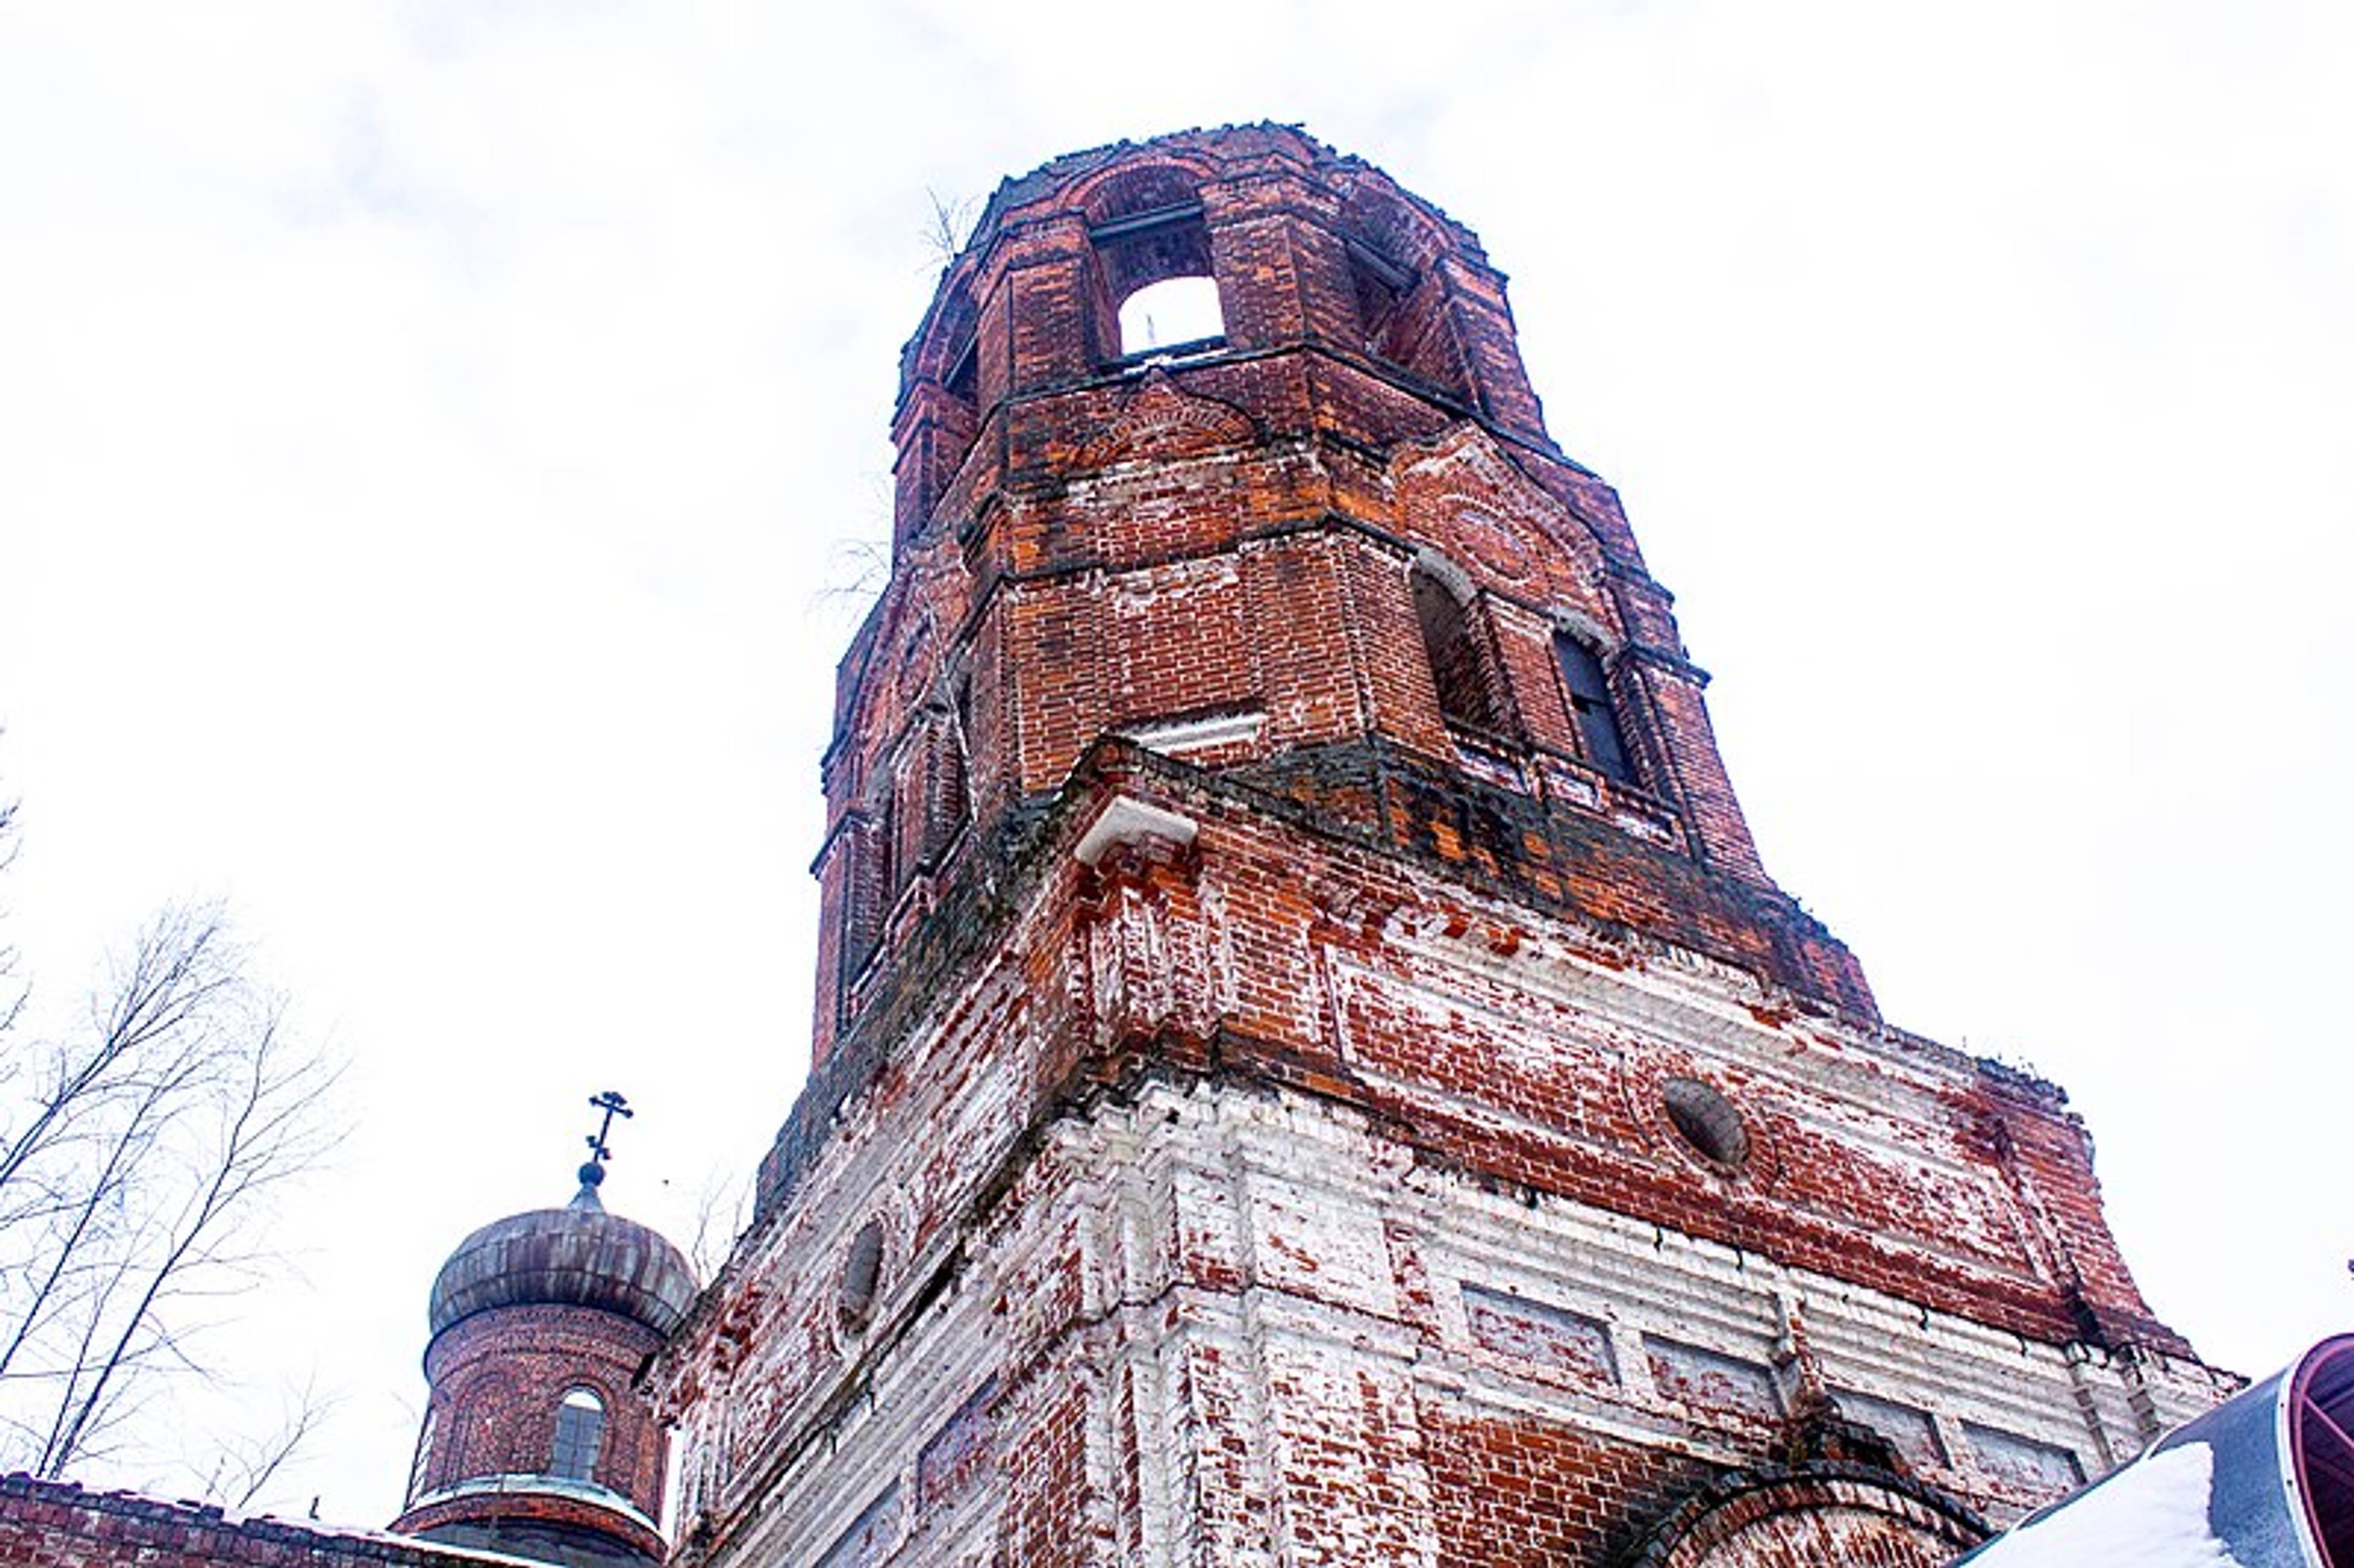 Paraskeva Church in Kiryushino